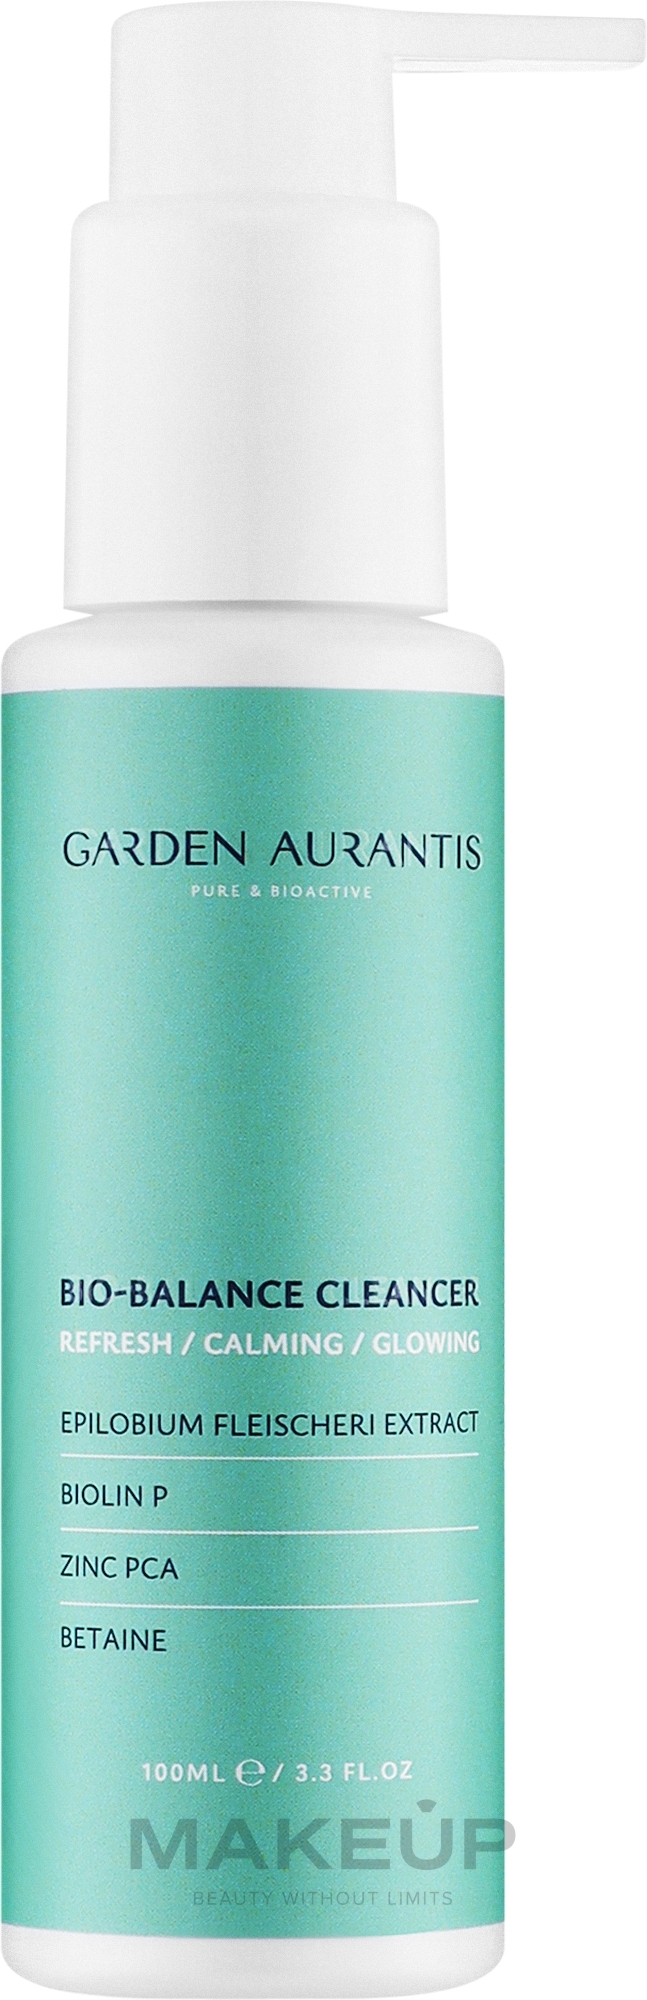 М’який очищаючий гель з нейтральним Ph для сяяння та здоров’я шкіри - Garden Aurantis Bio-balance Cleancer — фото 100ml